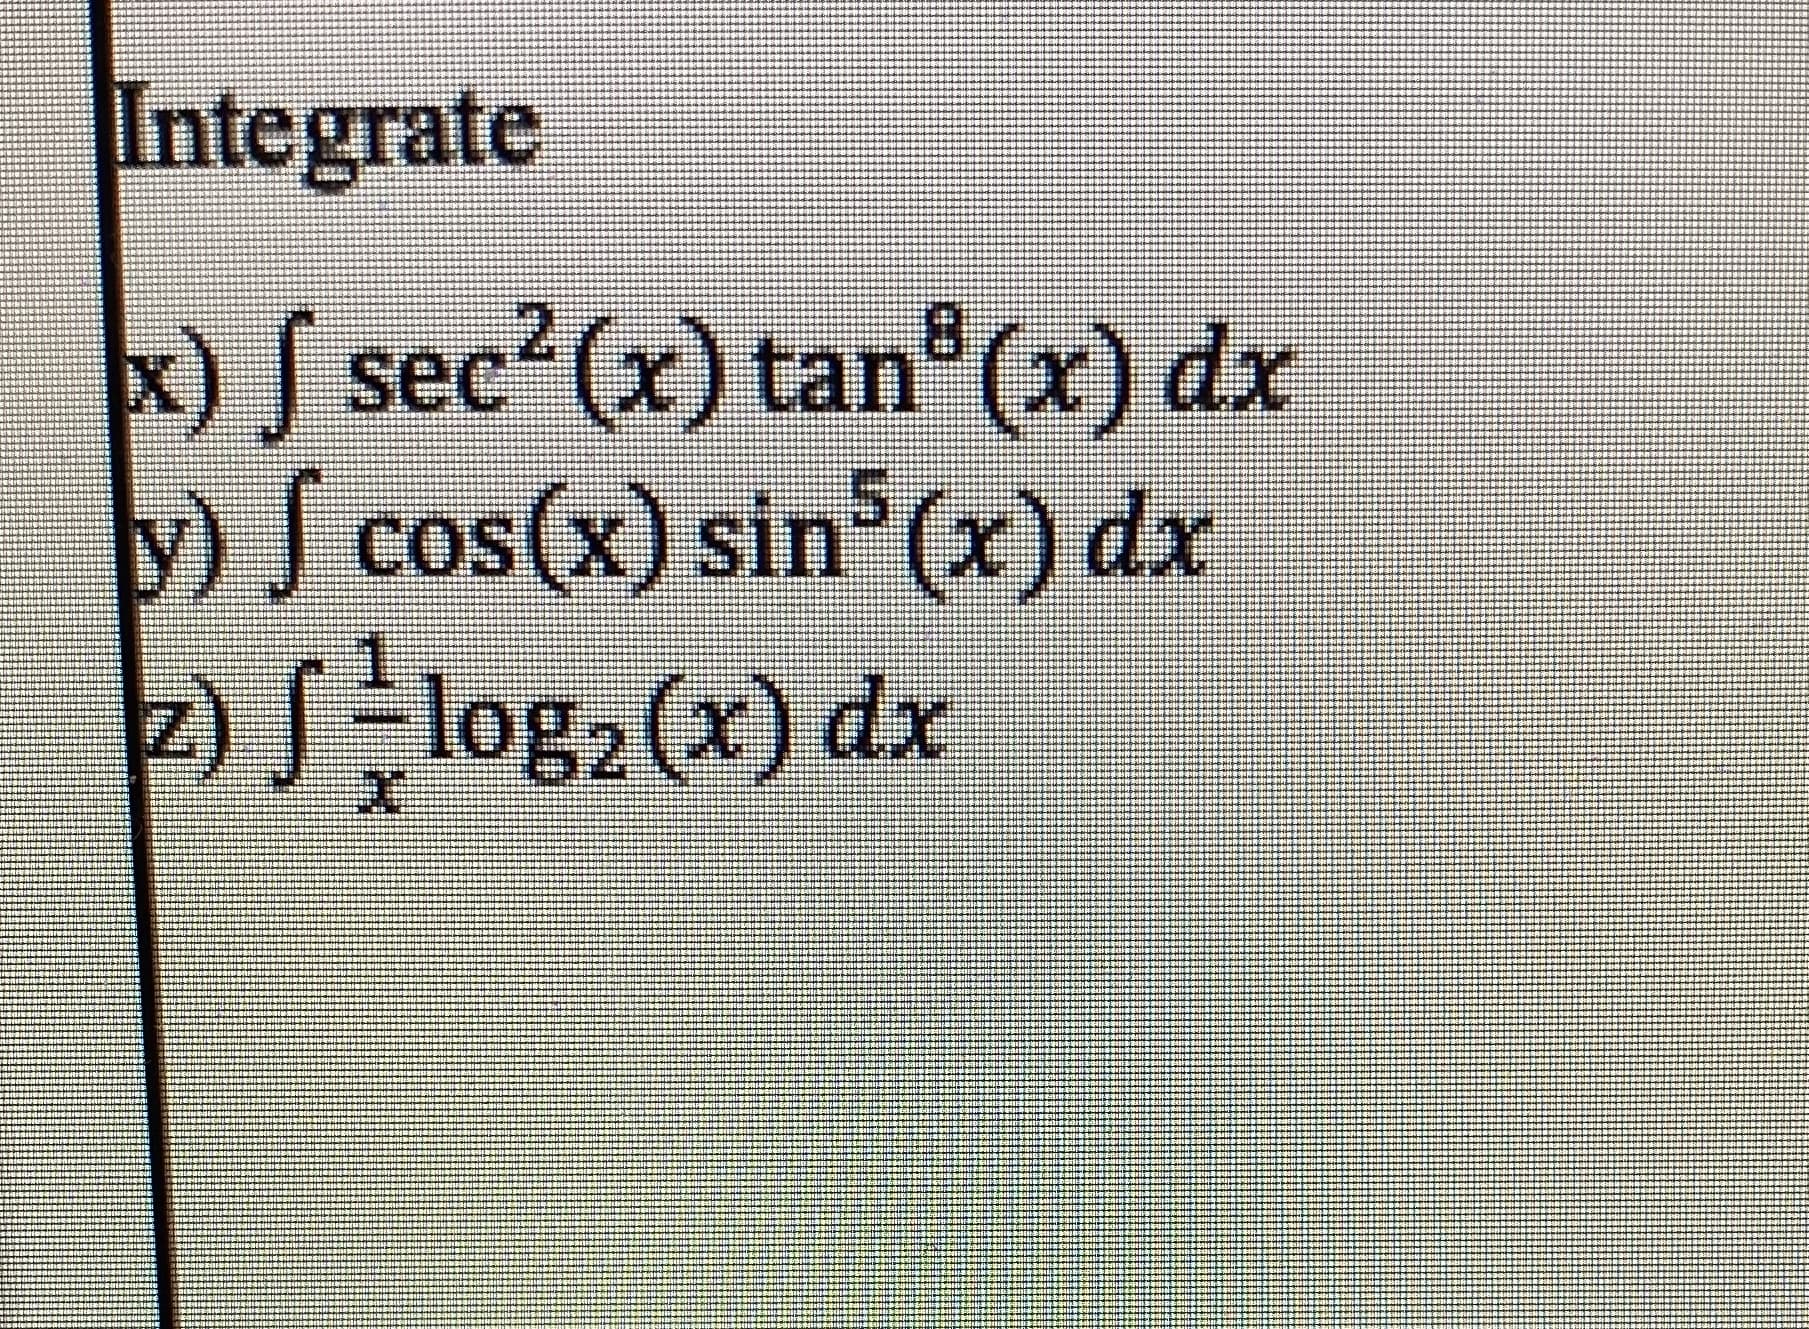 sec (x) tan (x) dx
S
S cos(x) sin (x) dx
-
log2 (x) dx
